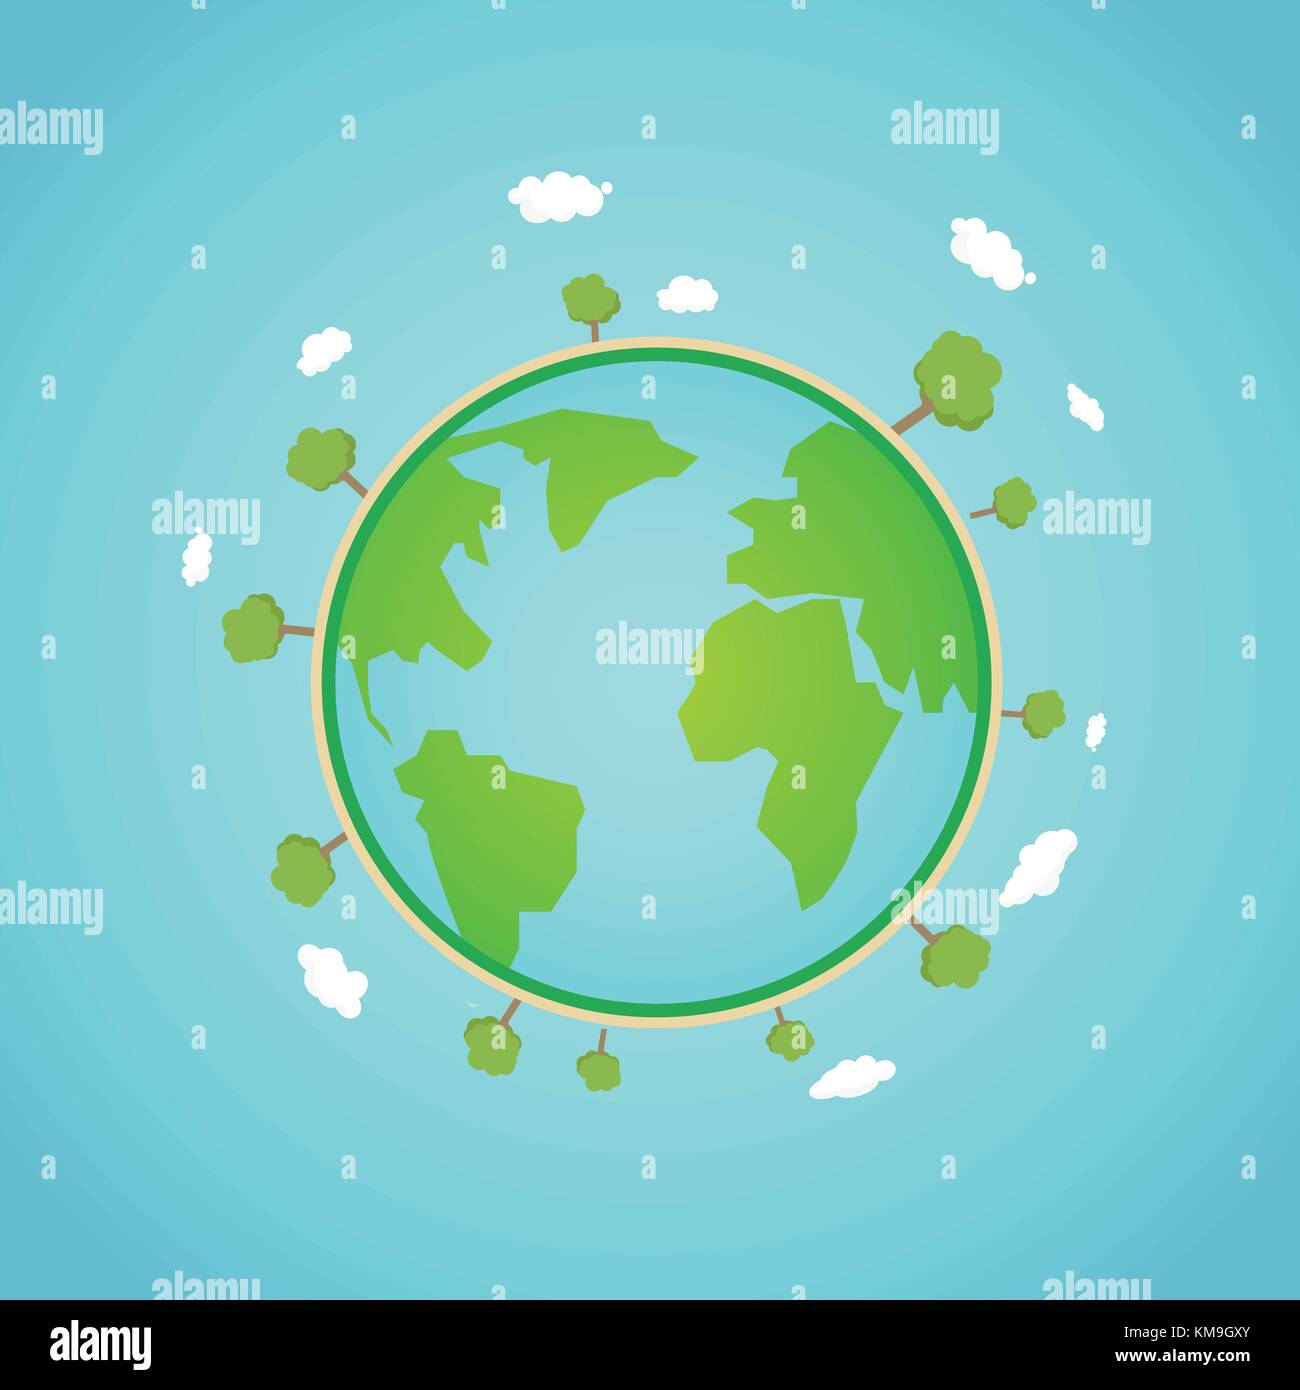 La terre eco concept mondial vector illustration.green world avec arbre et nuages autour.planet globe avec la nature et le fond de ciel Illustration de Vecteur